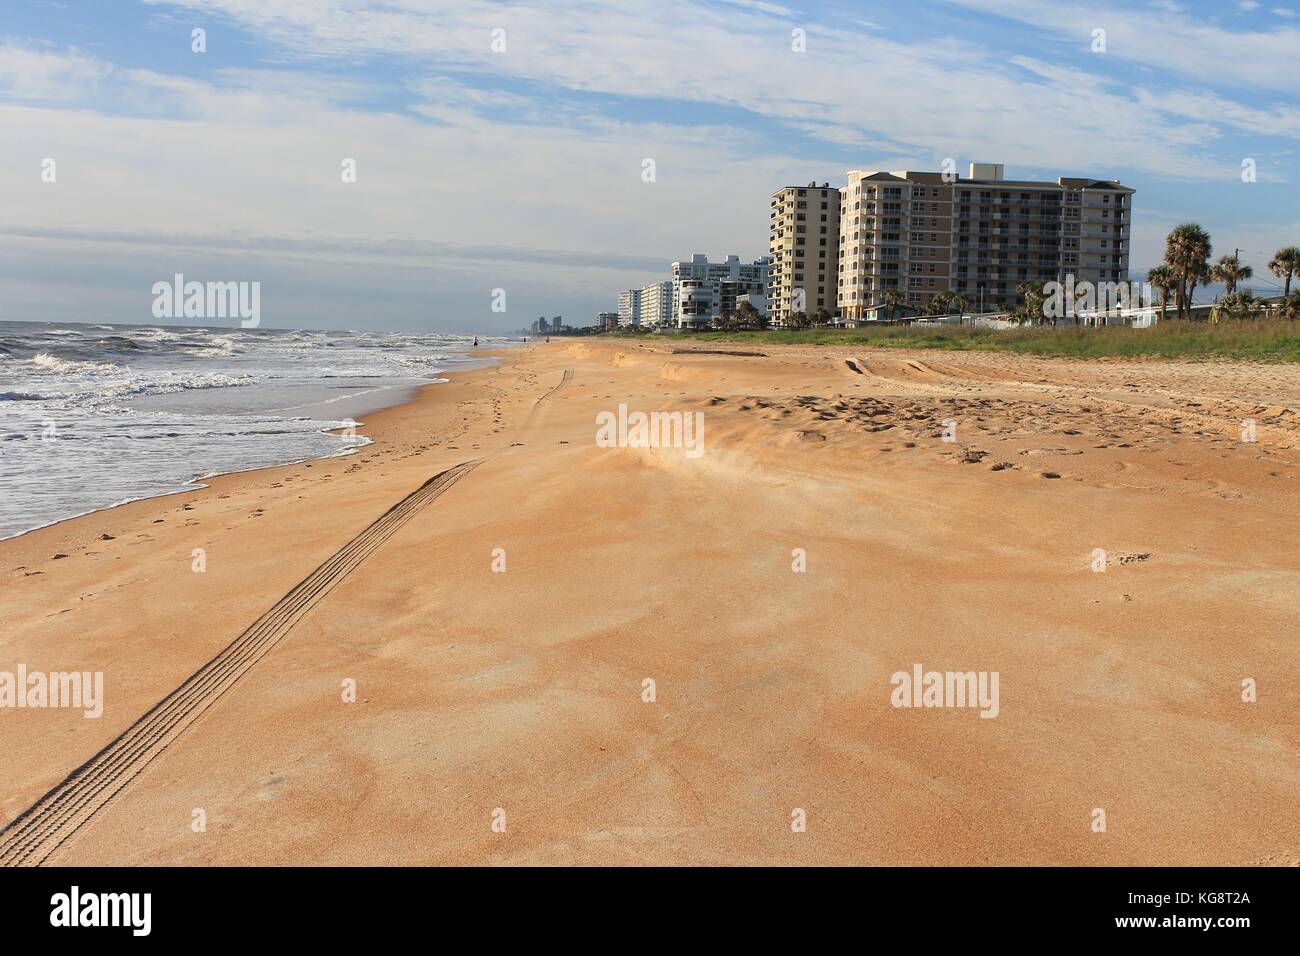 Onde in rotolamento sulla spiaggia, Ormond Beach, Florida, Stati Uniti d'America Foto Stock